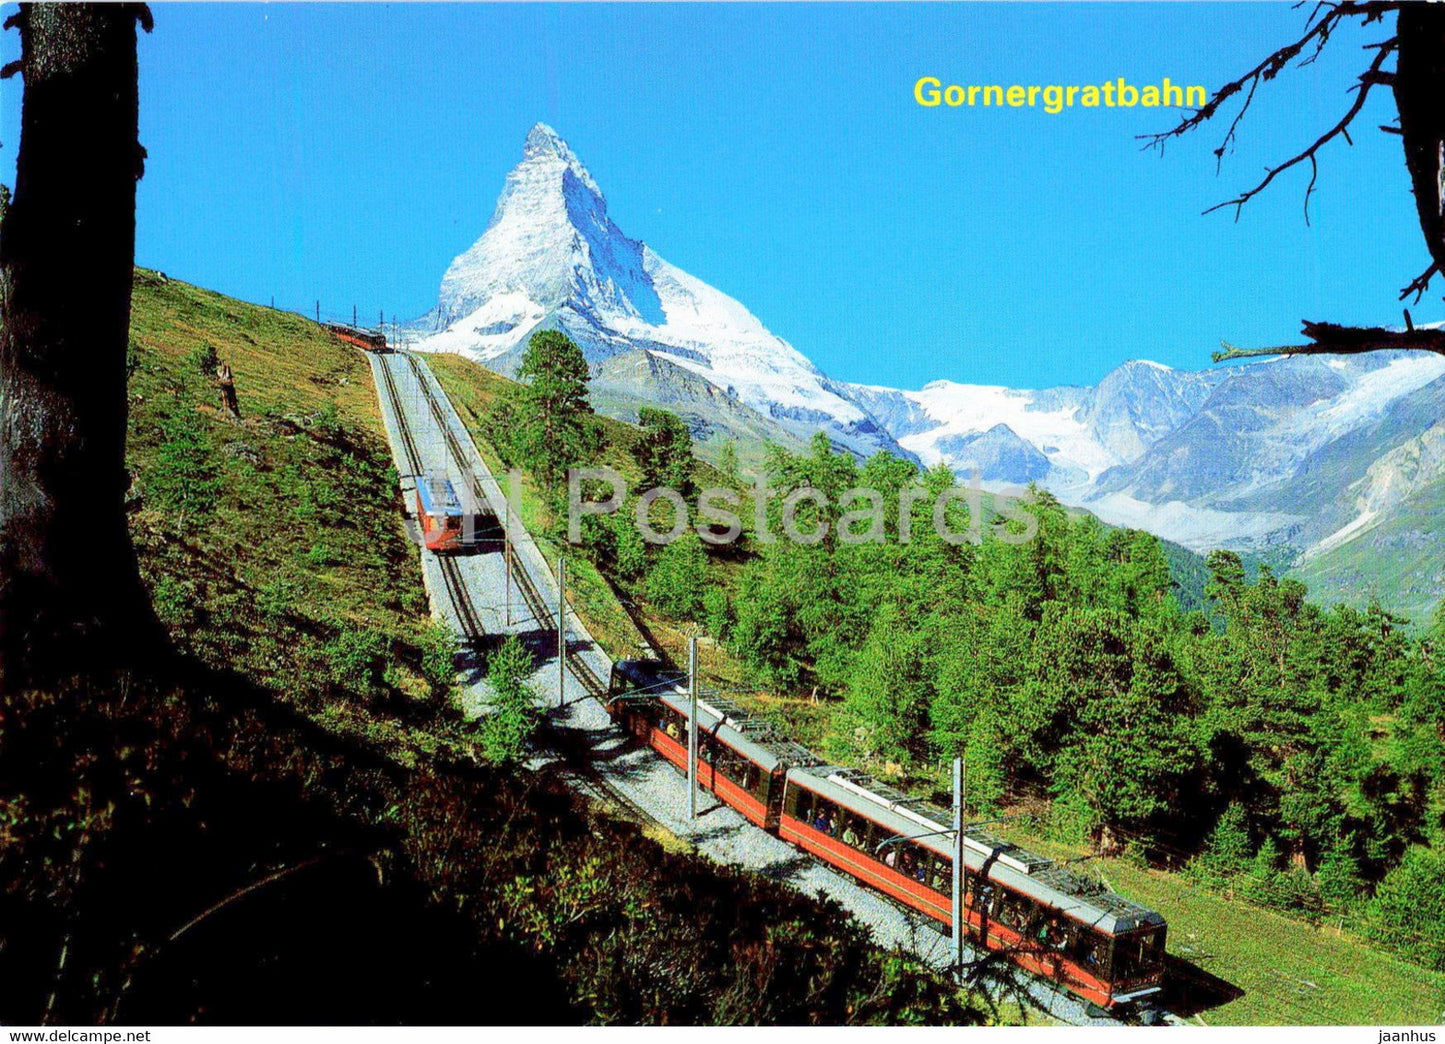 Gornergratbahn mit Matterhorn bei Riffelalp ob Zermatt - train - railway - locomotive - Switzerland - unused - JH Postcards